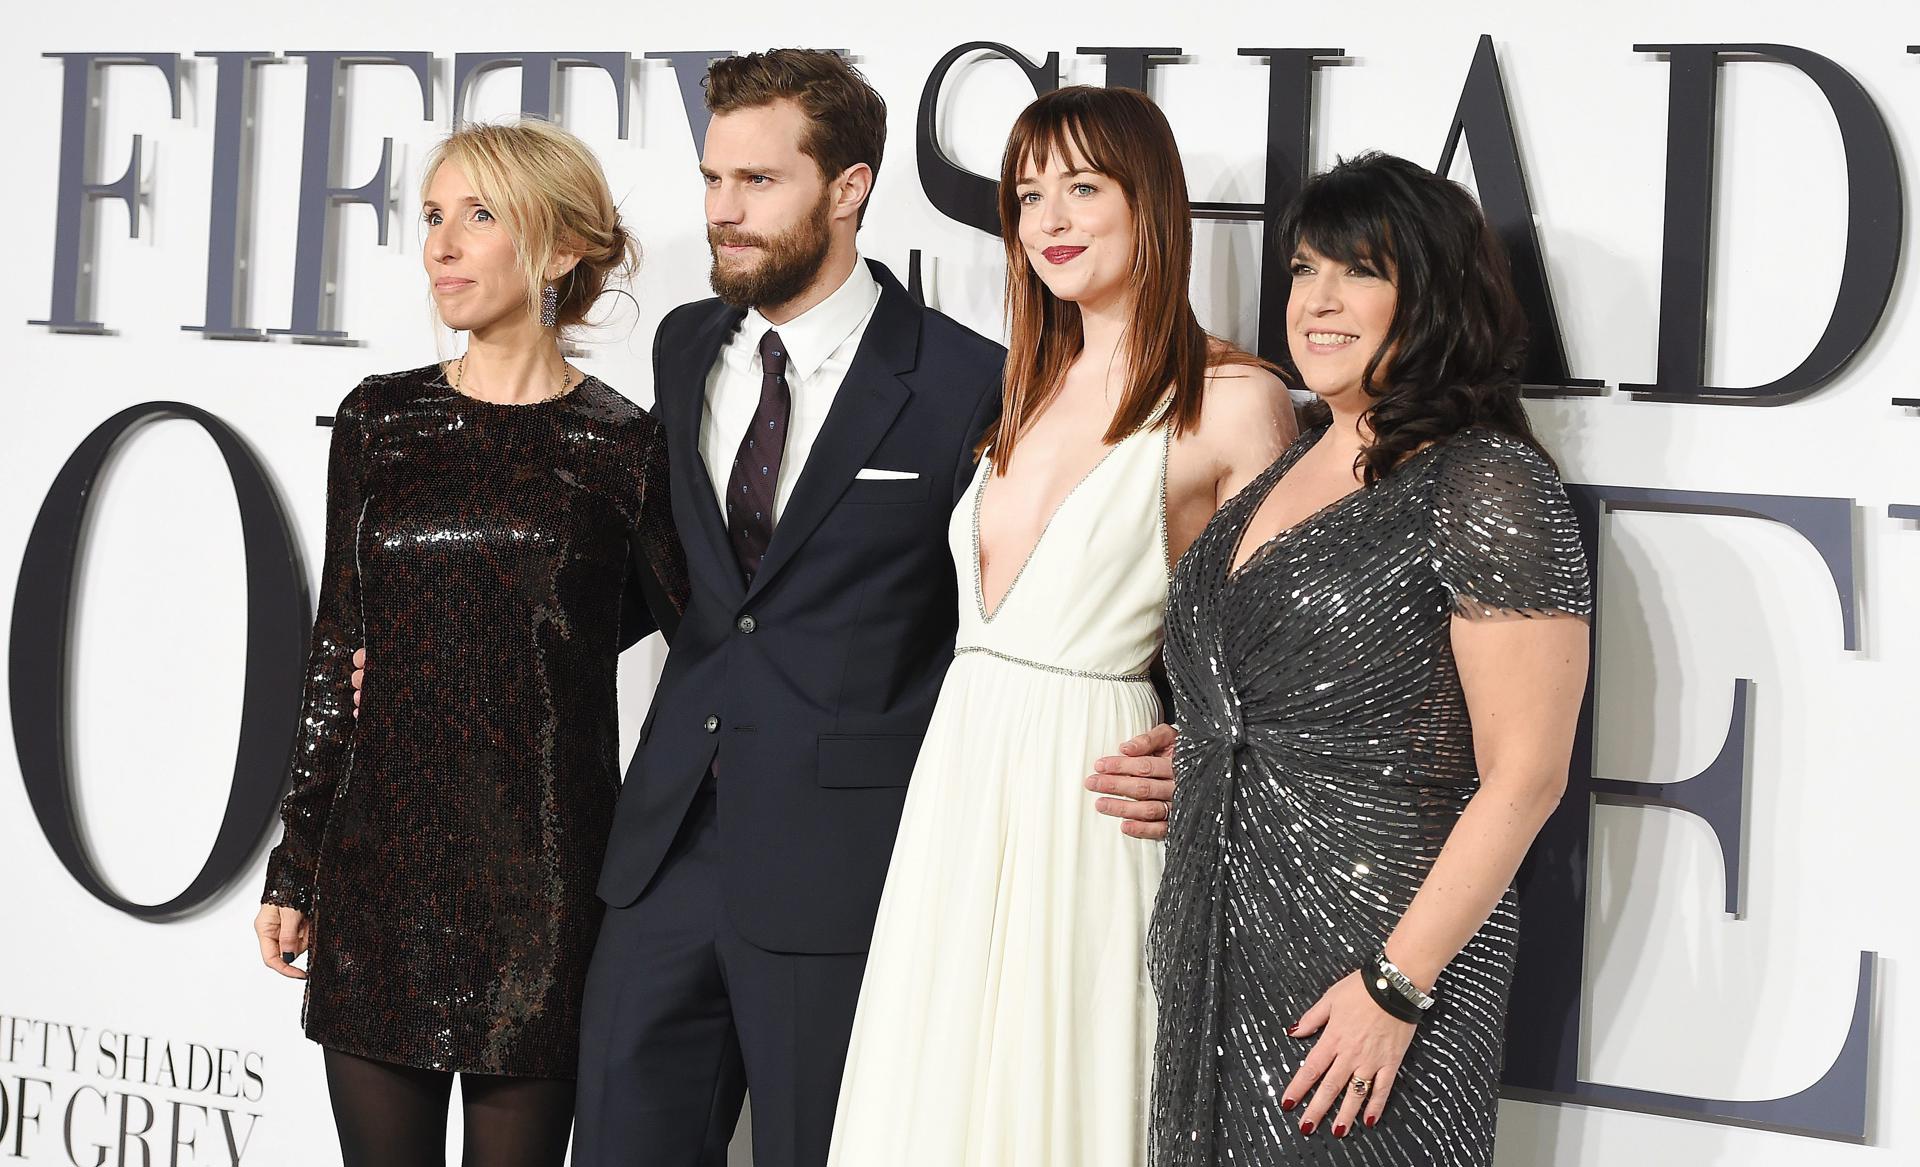 Imagen de archivo del estreno de la película "Las cincuenta sombras de Grey" el 12 de febrero de 2015, en Londres, donde salen la directora Sam Taylor-Johnson, los actores Jamie Dorman y Dakota Johnson y la escritora E.L. James.